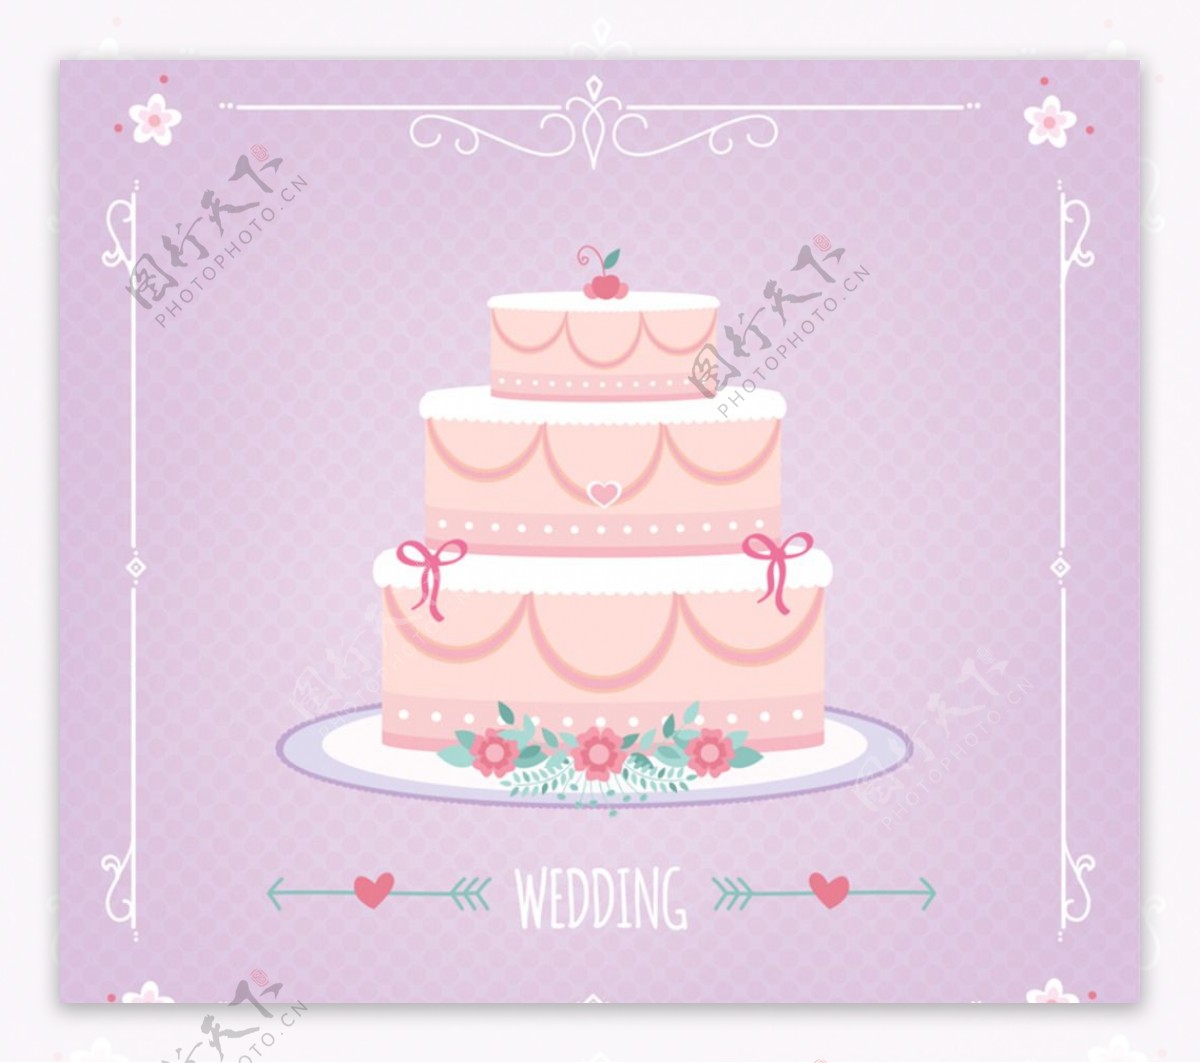 粉色婚礼蛋糕矢量素材